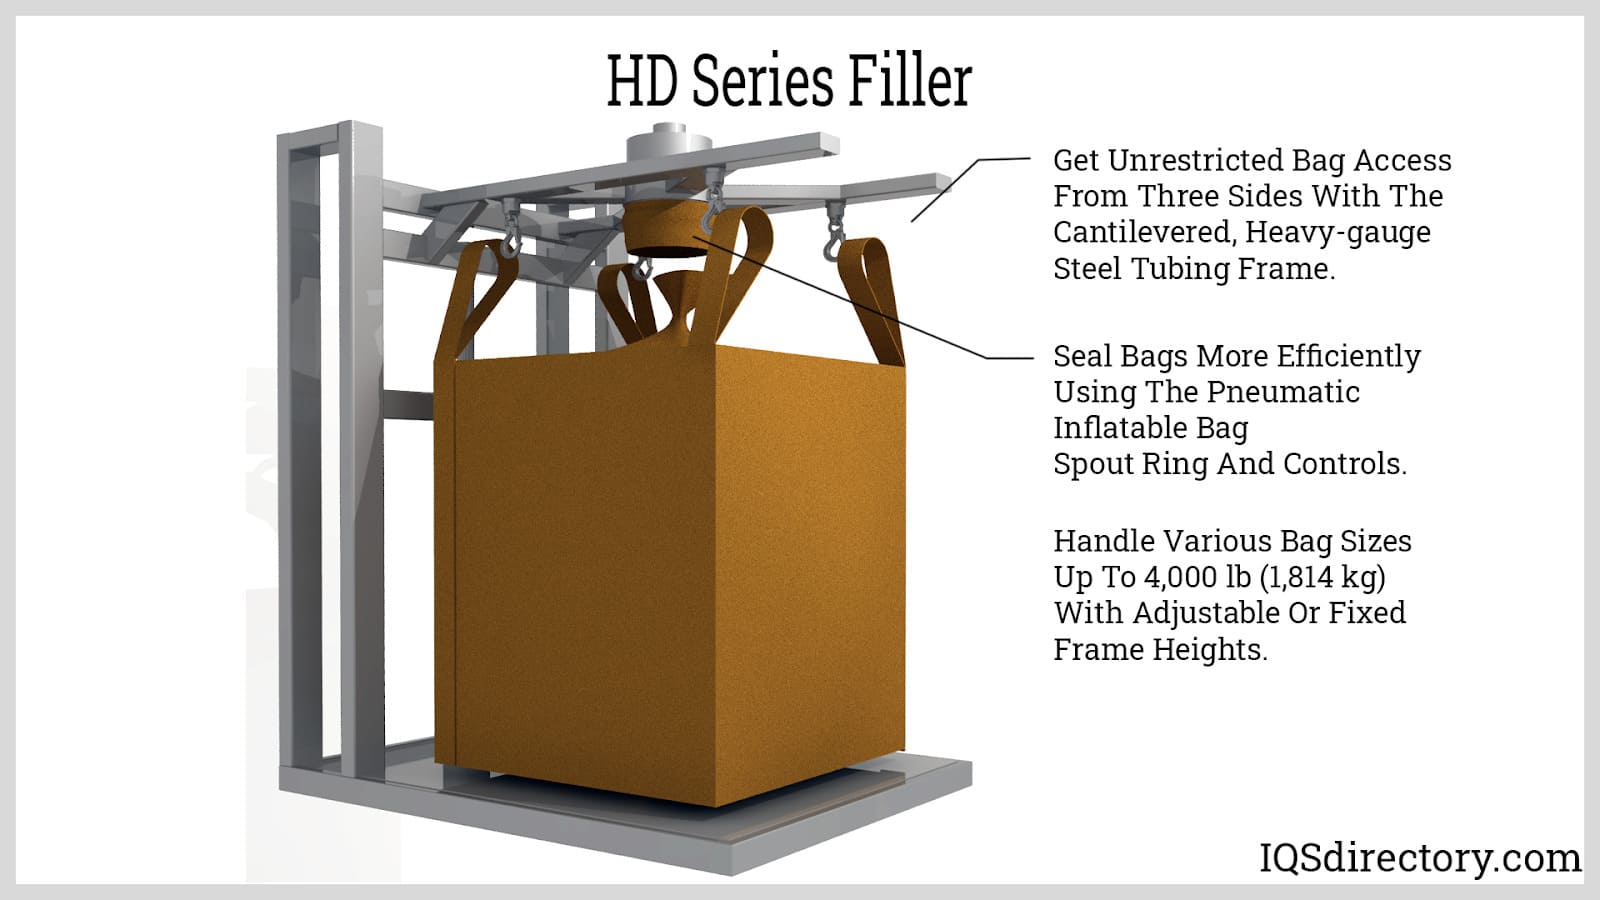 HD Series Filler